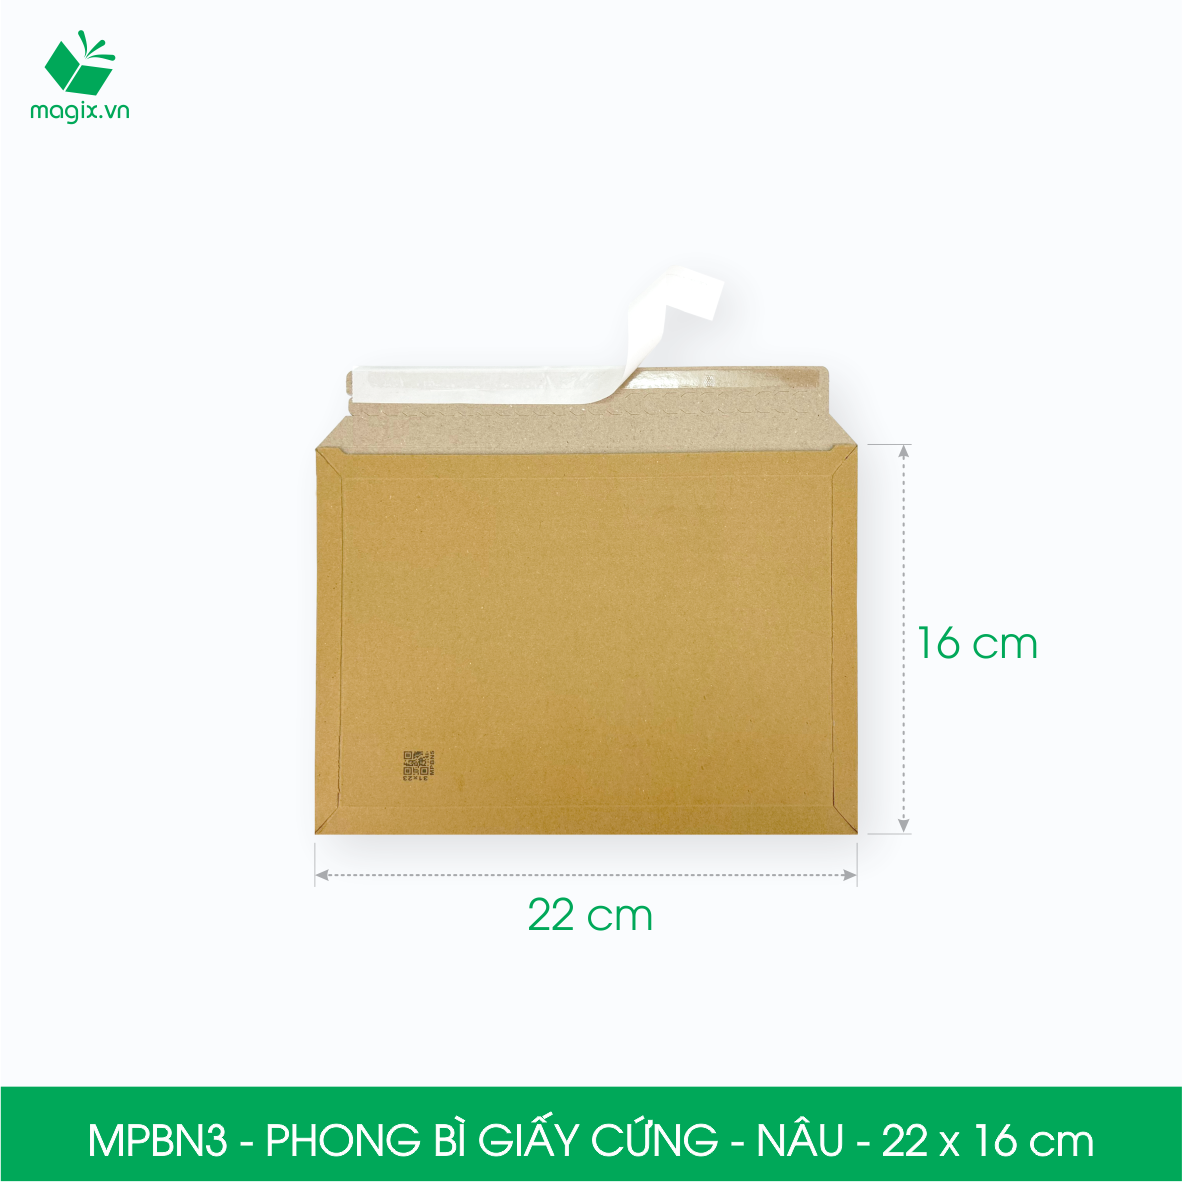 MPBN3 - 22x16 cm - Combo 20 phong bì giấy cứng đóng hàng màu nâu thay thế túi gói hàng